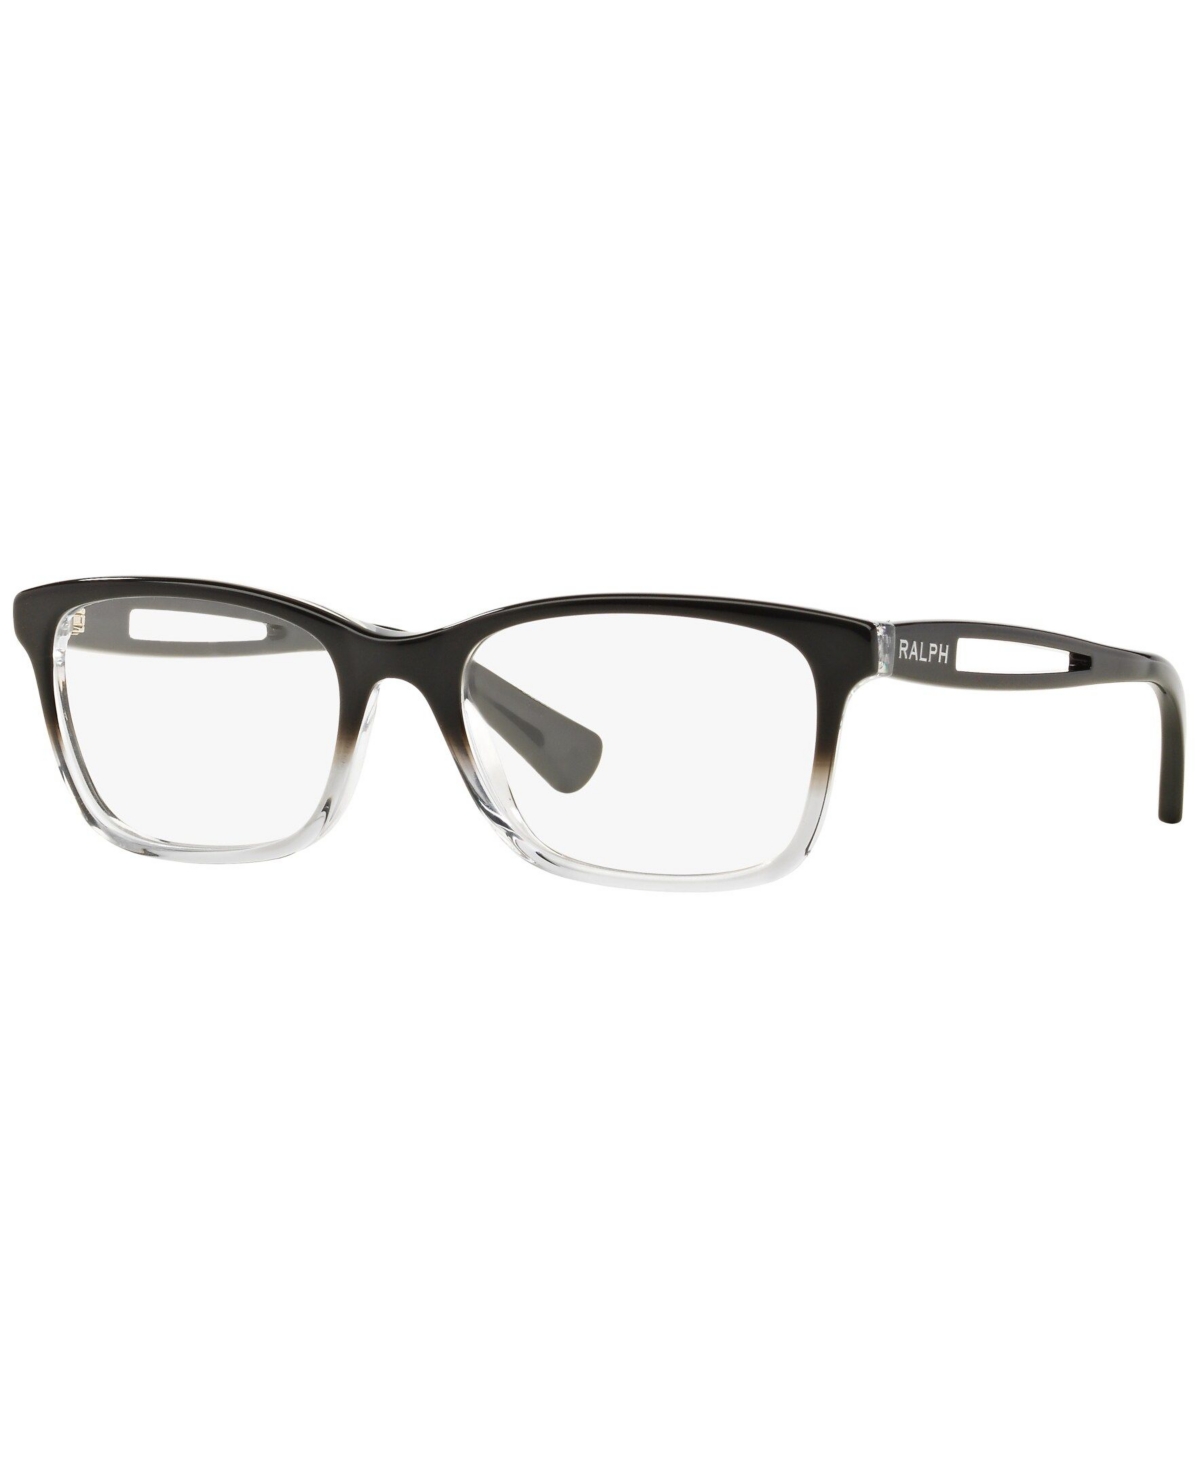 Ralph Lauren RA7069 Women's Square Eyeglasses - Black Grad